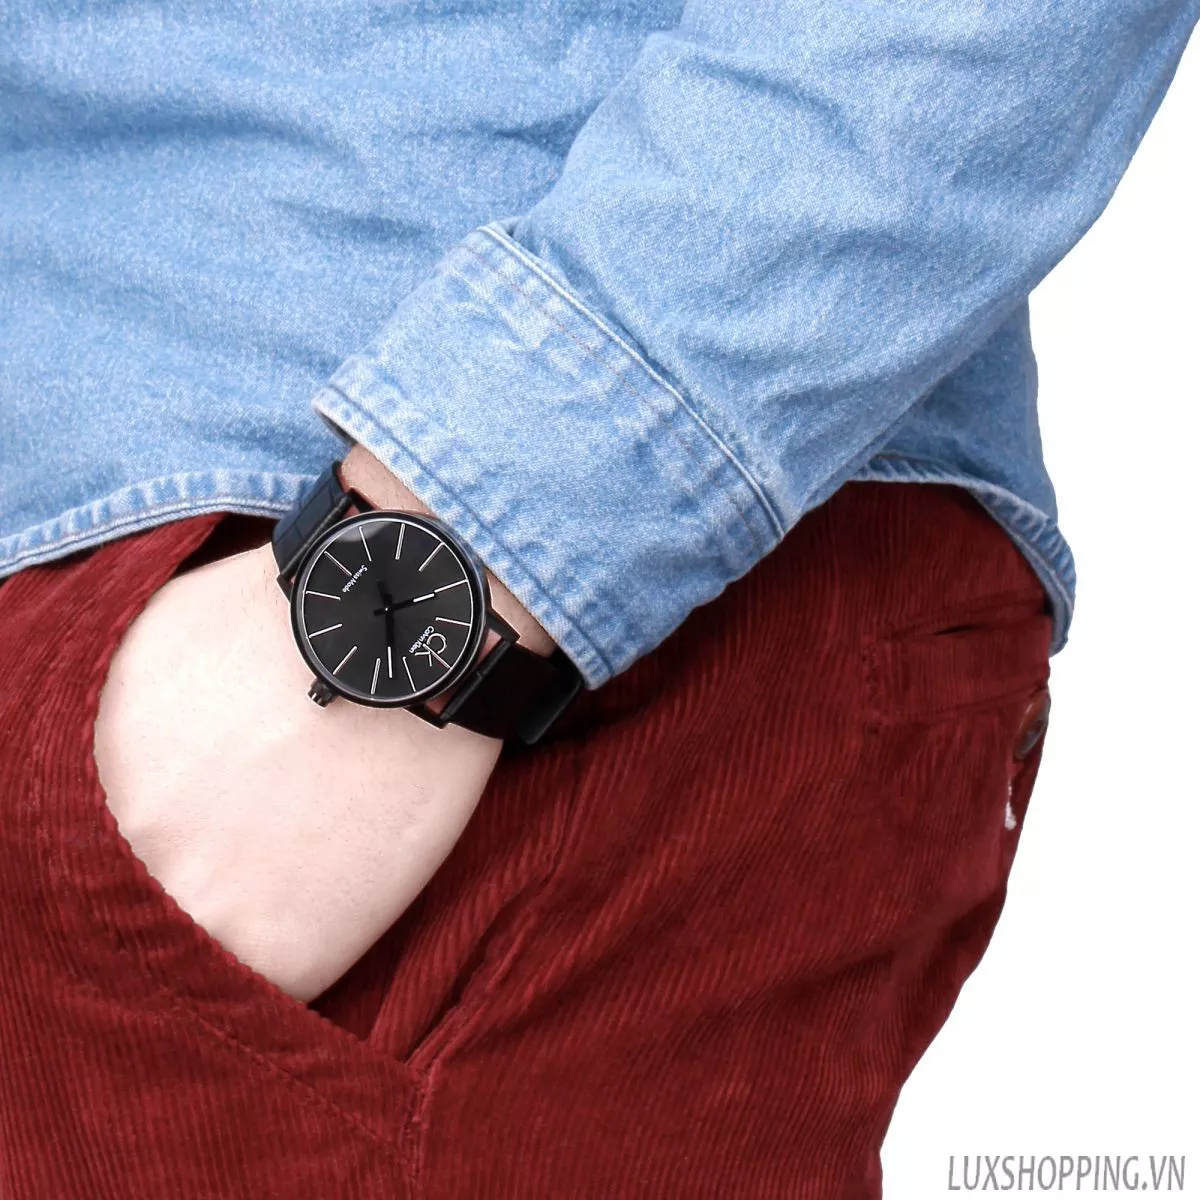 Calvin Klein Post Minimal Men's Watch 43mm